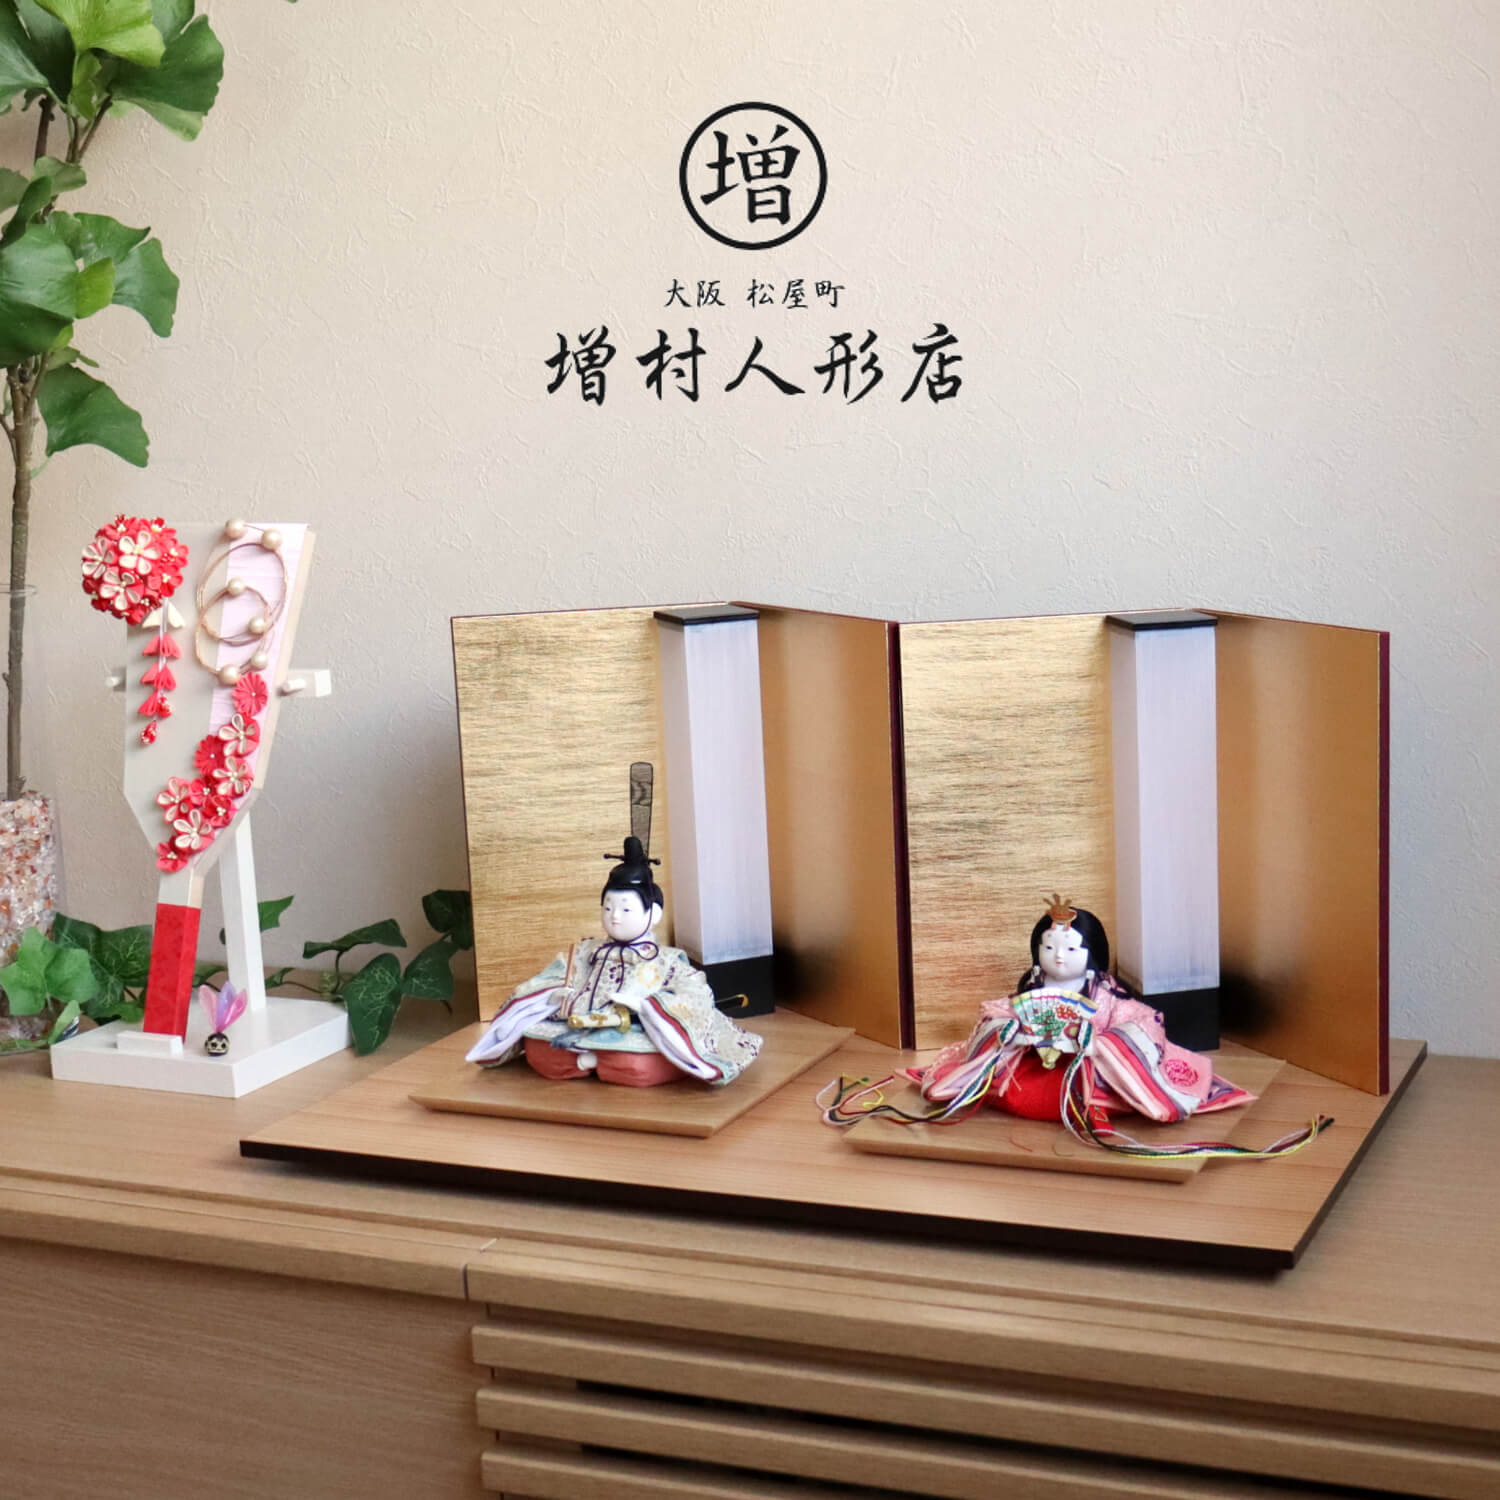 ※こちらの別売りの羽子板は、当ショップが販売致しております「羽子板　赤ピンク」をご参照ください。 サイズ 幅 55cm × 奥行 33cm × 高さ 26cm こころに寄り添う人形創りに受け継がれる技術と心 幸一光は、100年以上の歴史を持つ伝統的工芸品「江戸木目込人形」「江戸節句人形」という二つの技術を継承し「ひな人形」と「五月人形」の両方を手掛けるエ房です。 70代の熟練職人から20代の若手職人まで、幅広い年代の職人が日々技術を磨き、次の世代に技と心を伝えております。 《　三代目 幸一光　》 大正九年、東京の下町下谷竹町に創業し、以来九十有余年に亘り人形製造に携わる。 現三代目松崎幸一光は、昭和28年に東京で生まれ、昭和46年に18歳で父である先代、松崎幸雄(二代目昭玉)に師事。昭和63年には京都府立文化博物館に平治物語絵巻の信西の巻を基に武者行列を製作。 平成9年には重要無形文化財保持者(人間国宝)平田郷陽の弟子である芹川英子に師事。 平成12年には数々の功績が認められ、経済産業大臣認定伝統工芸士認定。続く平成17年には東京都知事認定東京マイスターに選ばれる。 現在に至るまで、総理大臣賞、最優秀技能賞を始め数々の受賞歴を有する、江戸木目込界を代表する作家の一人。 京都西陣織「大嶋金襴(おおしまきんらん)」 最高級正絹西陣織に特化した金襴商。昭和58年、実父である大嶋喬が1800年代後半より続く京都の老舗金襴卸問屋で約30年勤めた後に独立し「大嶋金襴」を設立。現代表の大嶋浩之は二代目。その納品先は著名人形職人のみならず、本山級神社仏閣、人間国宝級刀匠など多岐に渡る。本金や手織をはじめとする最高級正絹西陣織に特化した金襴商。※こちらの別売りの羽子板は、当ショップが販売致しております「羽子板　赤ピンク」をご参照ください。 サイズ 幅 55cm × 奥行 33cm × 高さ 26cm こころに寄り添う人形創りに受け継がれる技術と心 幸一光は、100年以上の歴史を持つ伝統的工芸品「江戸木目込人形」「江戸節句人形」という二つの技術を継承し「ひな人形」と「五月人形」の両方を手掛けるエ房です。 70代の熟練職人から20代の若手職人まで、幅広い年代の職人が日々技術を磨き、次の世代に技と心を伝えております。 《　三代目 幸一光　》 大正九年、東京の下町下谷竹町に創業し、以来九十有余年に亘り人形製造に携わる。 現三代目松崎幸一光は、昭和28年に東京で生まれ、昭和46年に18歳で父である先代、松崎幸雄(二代目昭玉)に師事。昭和63年には京都府立文化博物館に平治物語絵巻の信西の巻を基に武者行列を製作。 平成9年には重要無形文化財保持者(人間国宝)平田郷陽の弟子である芹川英子に師事。 平成12年には数々の功績が認められ、経済産業大臣認定伝統工芸士認定。続く平成17年には東京都知事認定東京マイスターに選ばれる。 現在に至るまで、総理大臣賞、最優秀技能賞を始め数々の受賞歴を有する、江戸木目込界を代表する作家の一人。 京都西陣織「大嶋金襴(おおしまきんらん)」 最高級正絹西陣織に特化した金襴商。昭和58年、実父である大嶋喬が1800年代後半より続く京都の老舗金襴卸問屋で約30年勤めた後に独立し「大嶋金襴」を設立。現代表の大嶋浩之は二代目。その納品先は著名人形職人のみならず、本山級神社仏閣、人間国宝級刀匠など多岐に渡る。本金や手織をはじめとする最高級正絹西陣織に特化した金襴商。